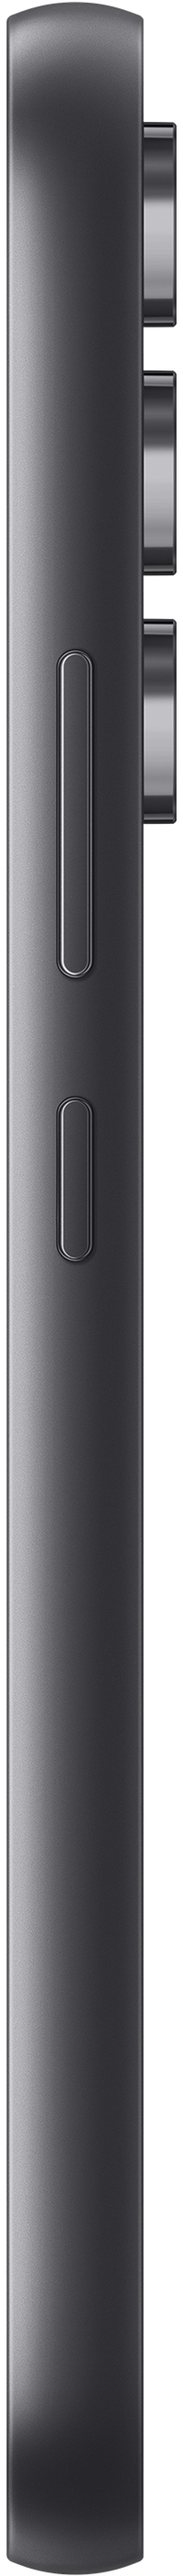 Samsung Galaxy A54 5G 128GB Dual-SIM Svart